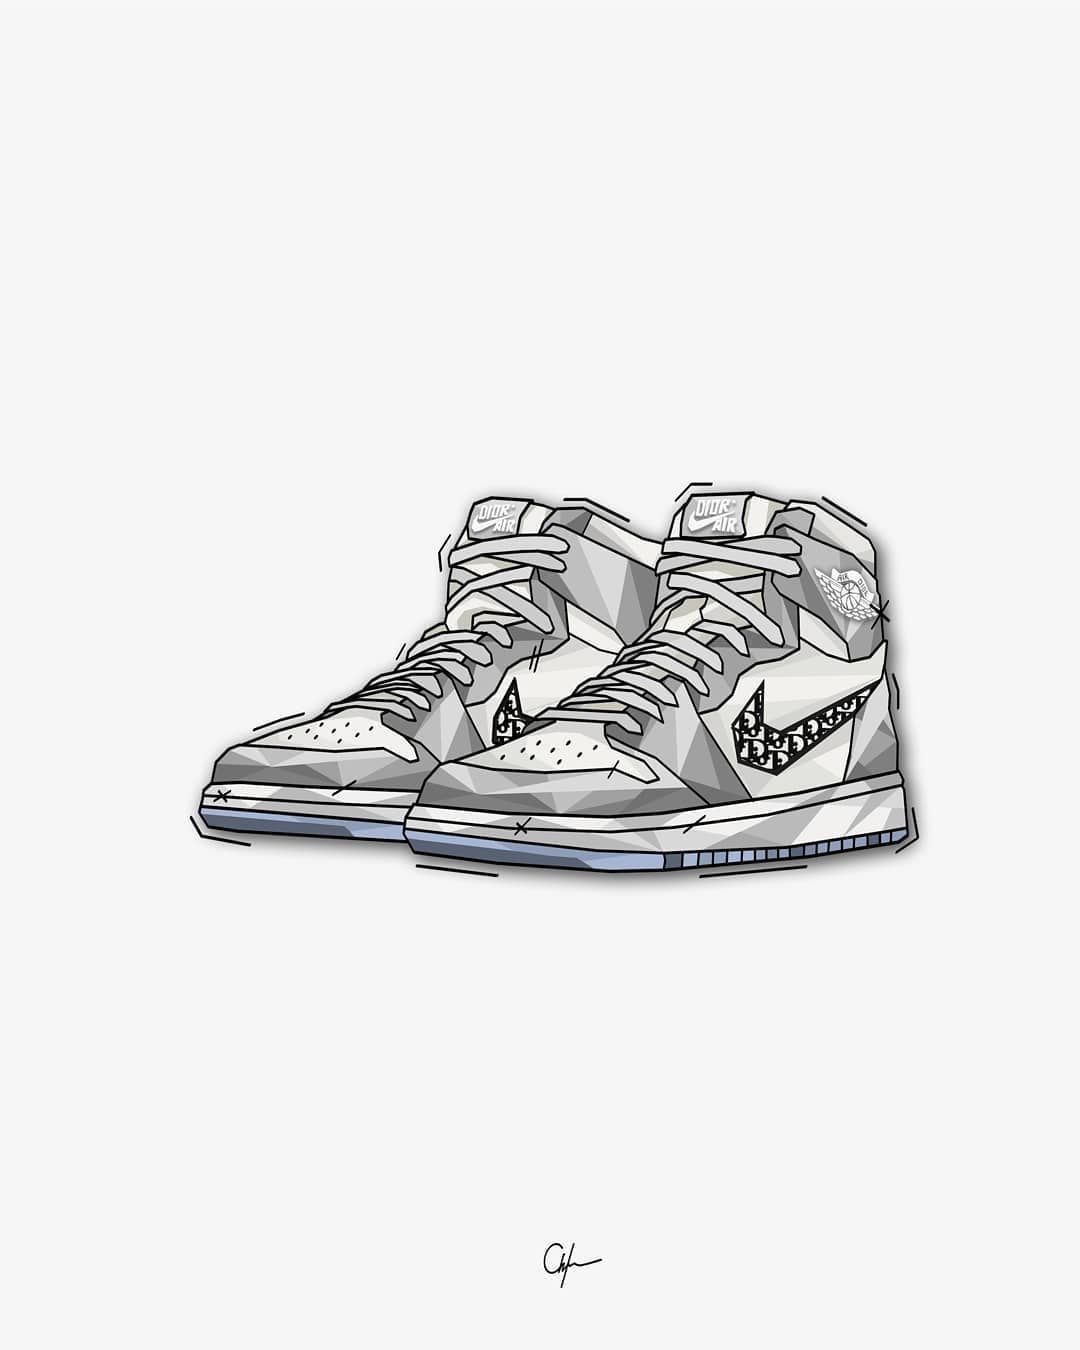 Dior x Nike Air Jordan 1. Art. Nike art, Sneaker art, Sneakers illustration